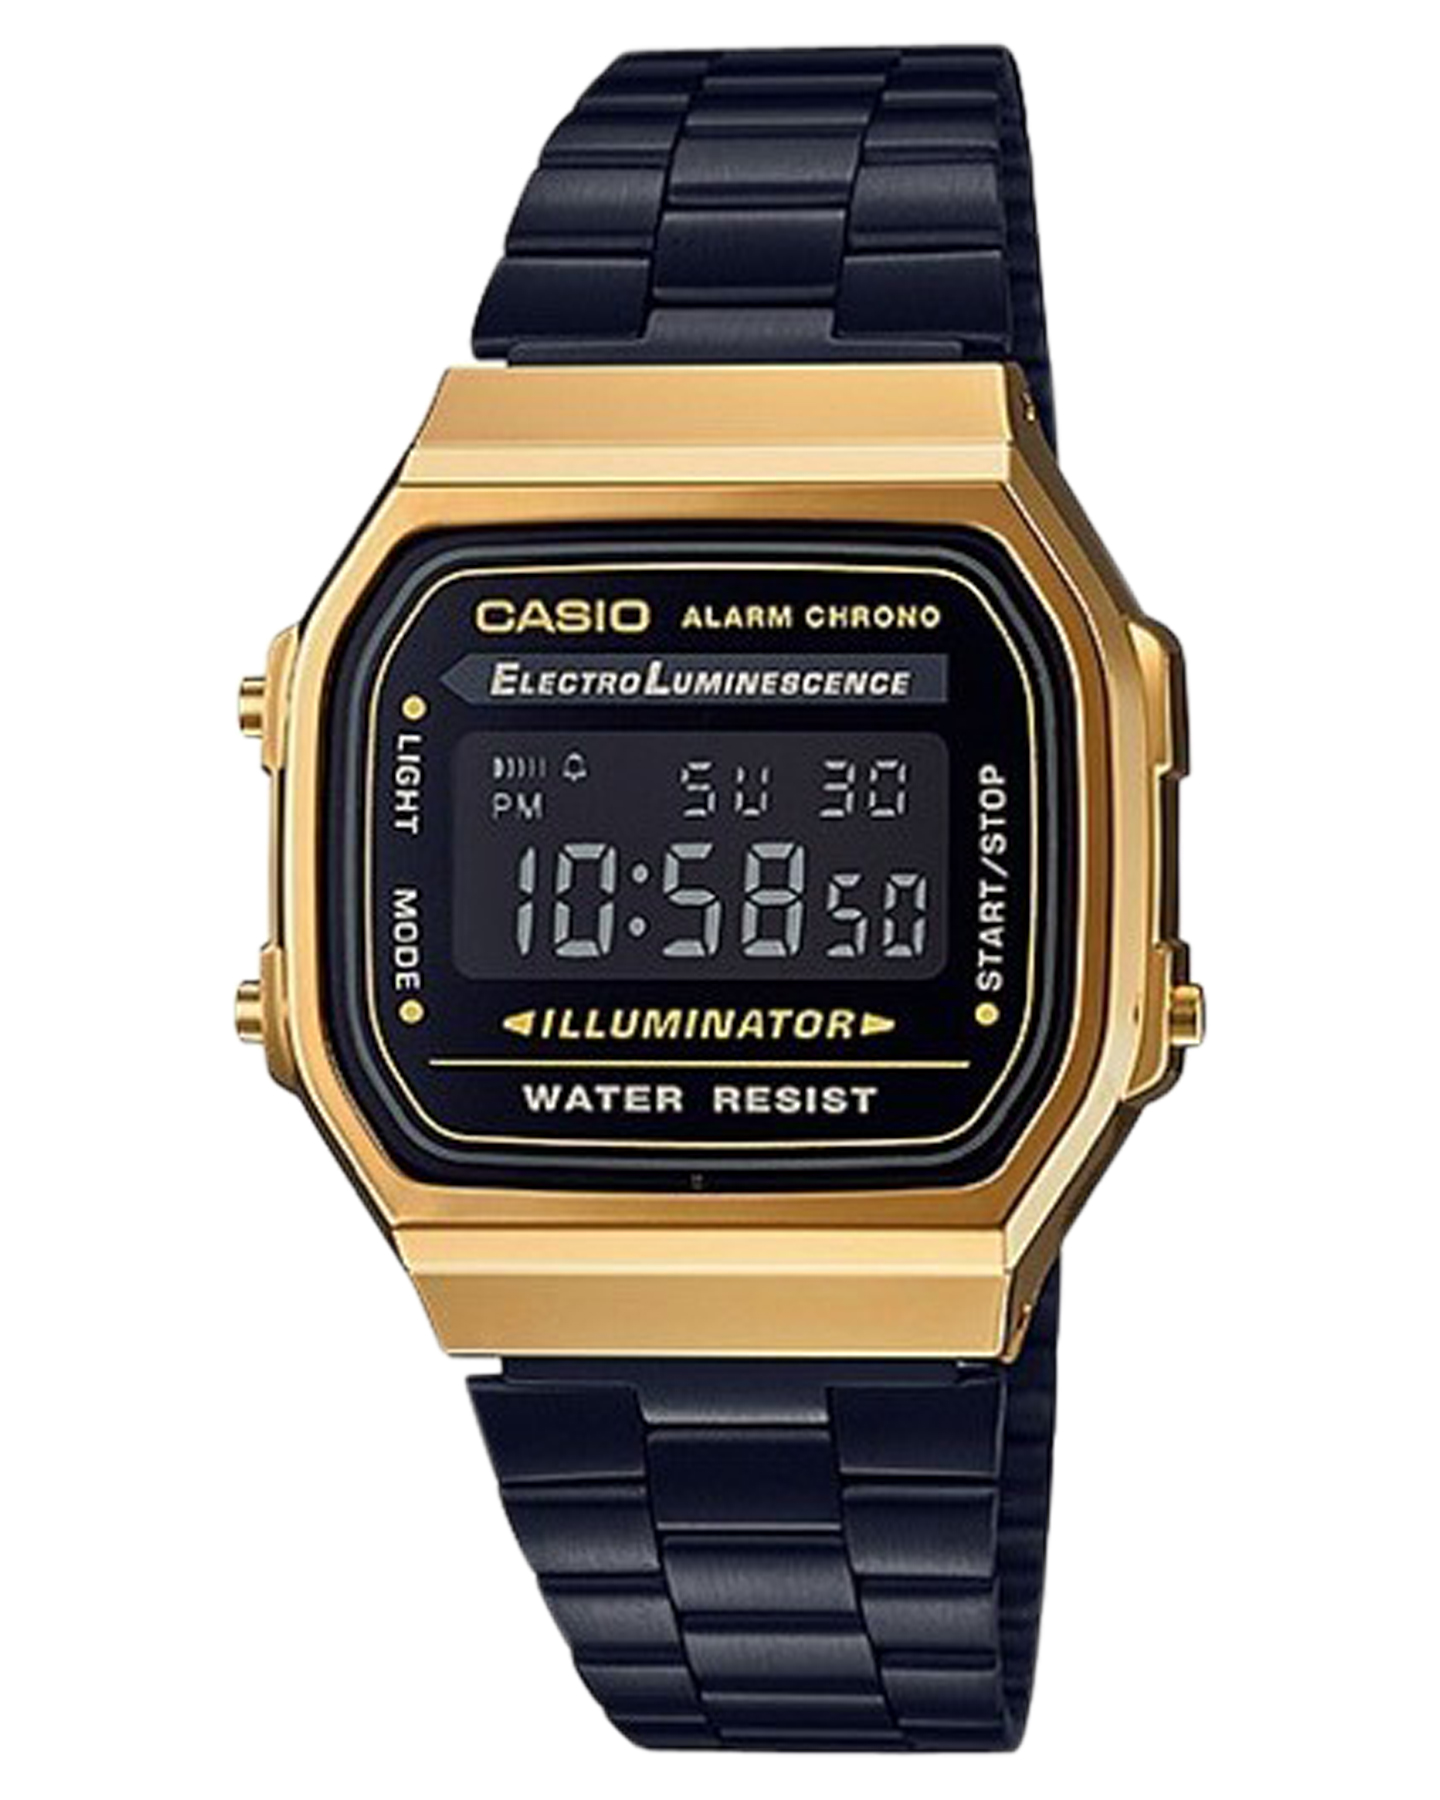 Casio Digital Illuminator Watch - Black Gold | SurfStitch